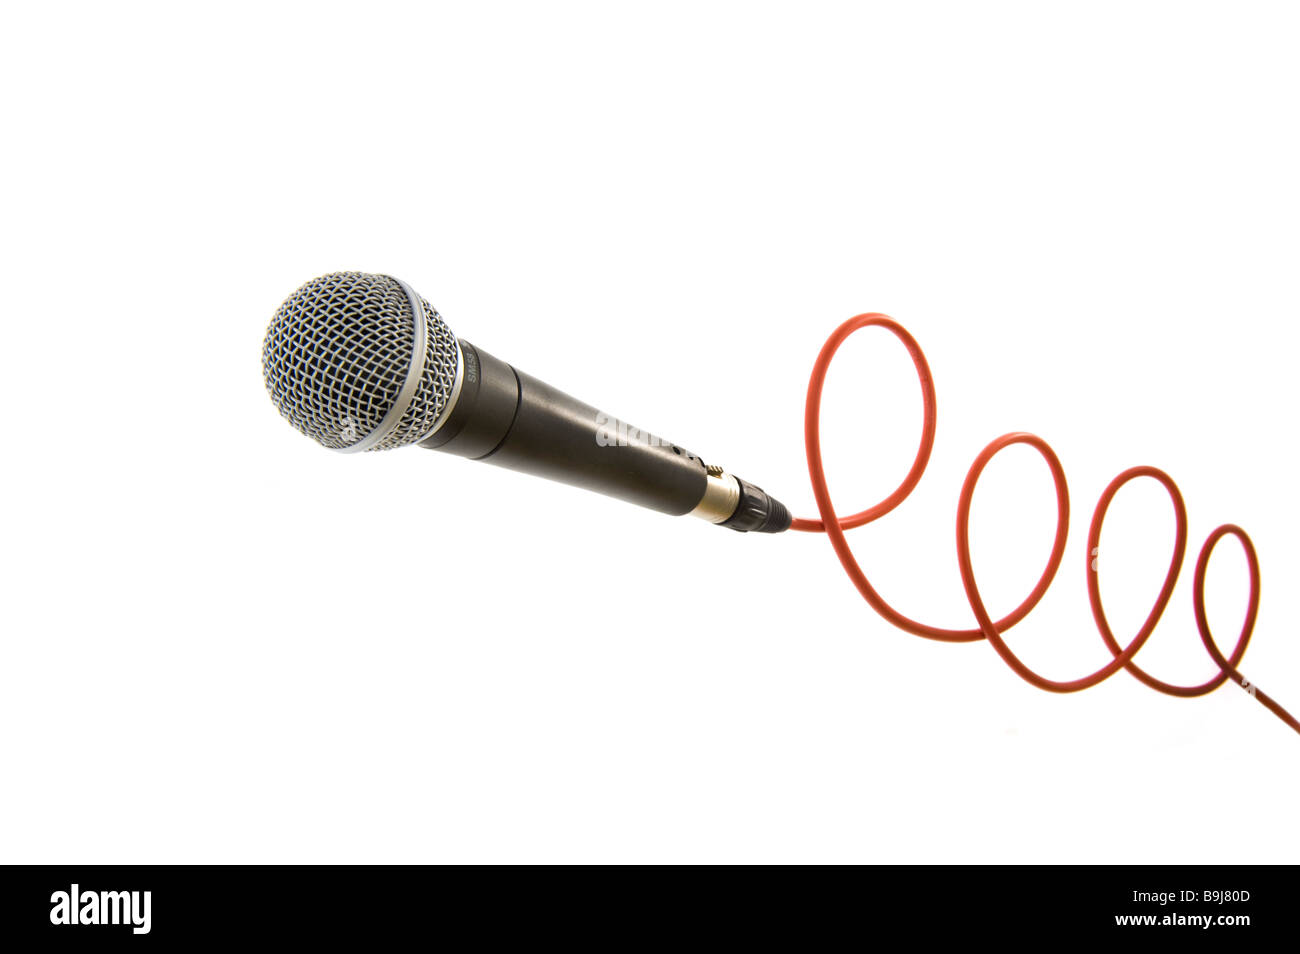 Mikrofon micro Mike mic Mikrophone mit roten Draht Kabel Streifen Linie verbinden Verbindung Musik singen Sänger Vision Contest sym Stockfoto